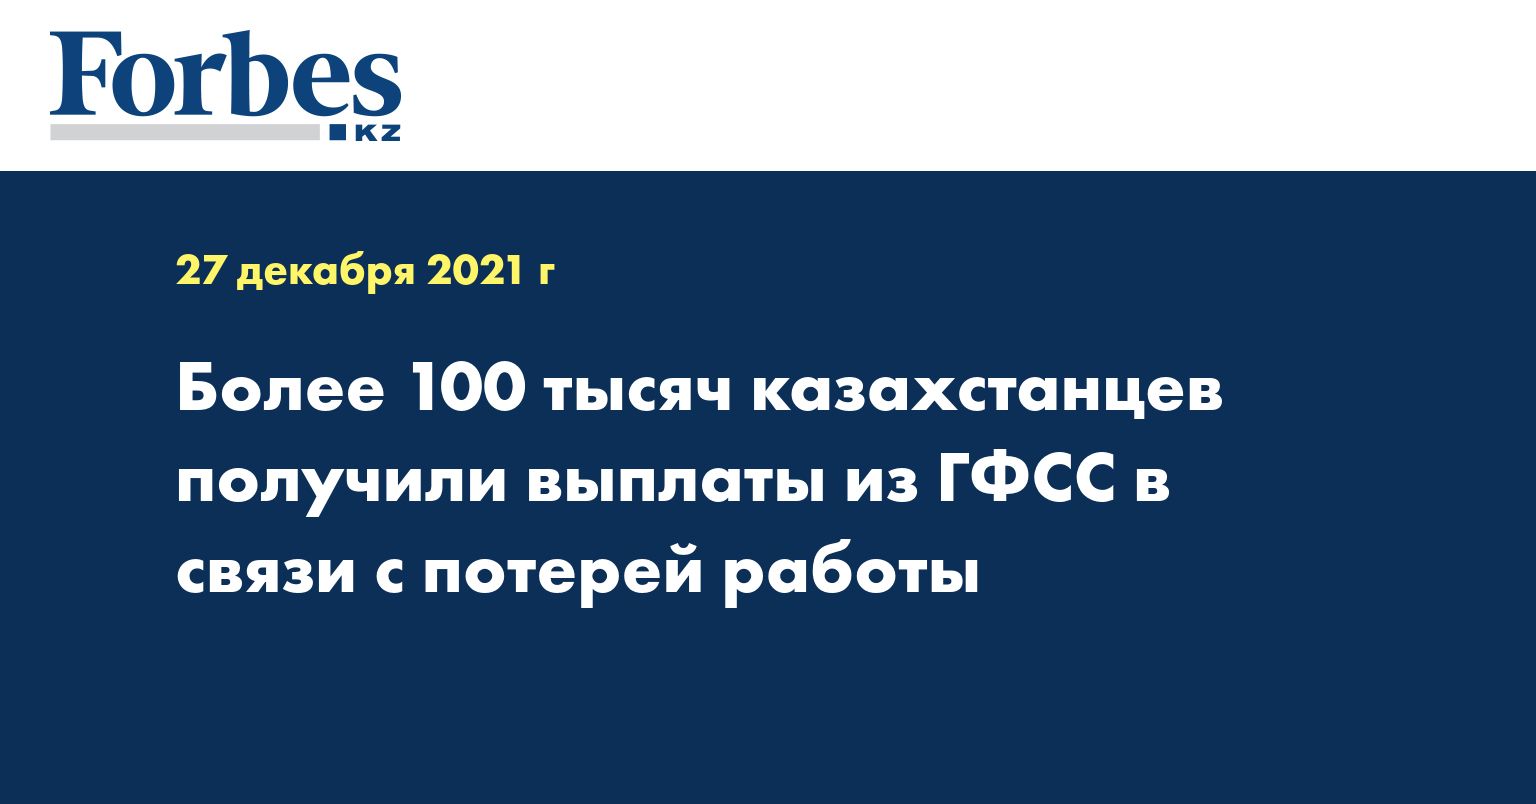 Более 100 тысяч казахстанцев получили выплаты из ГФСС в связи с потерей работы